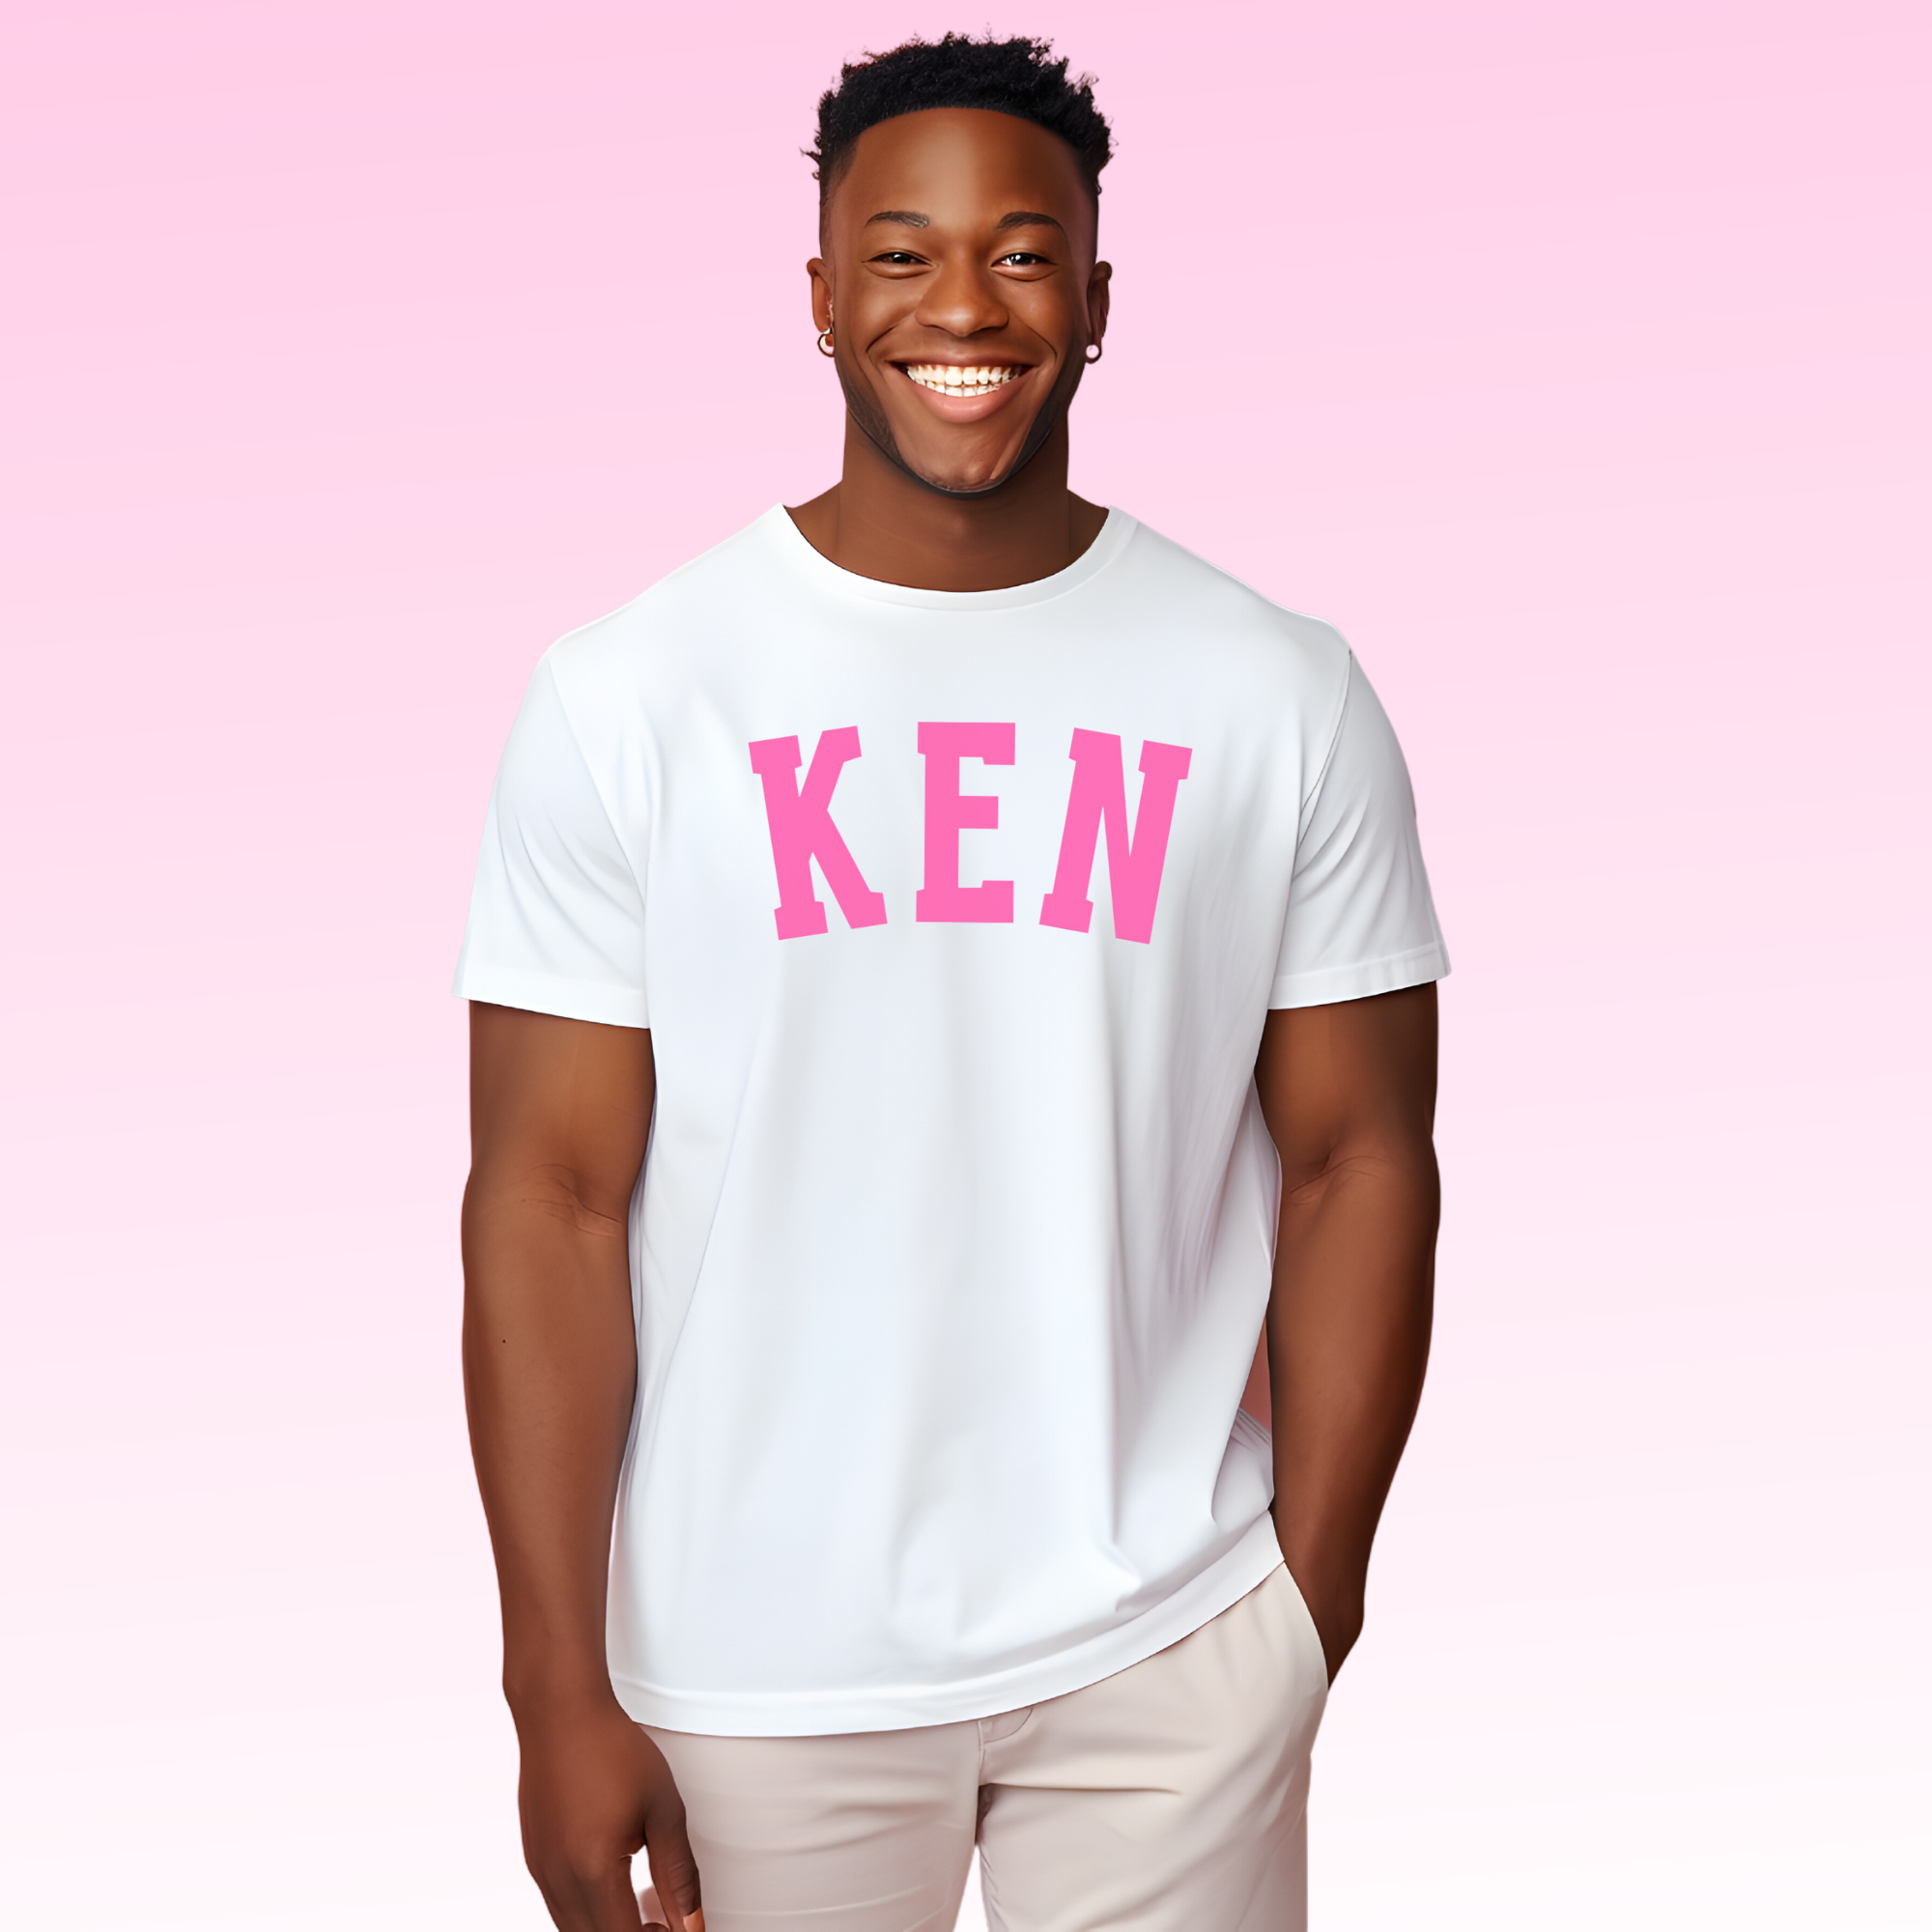 Ken Shirt